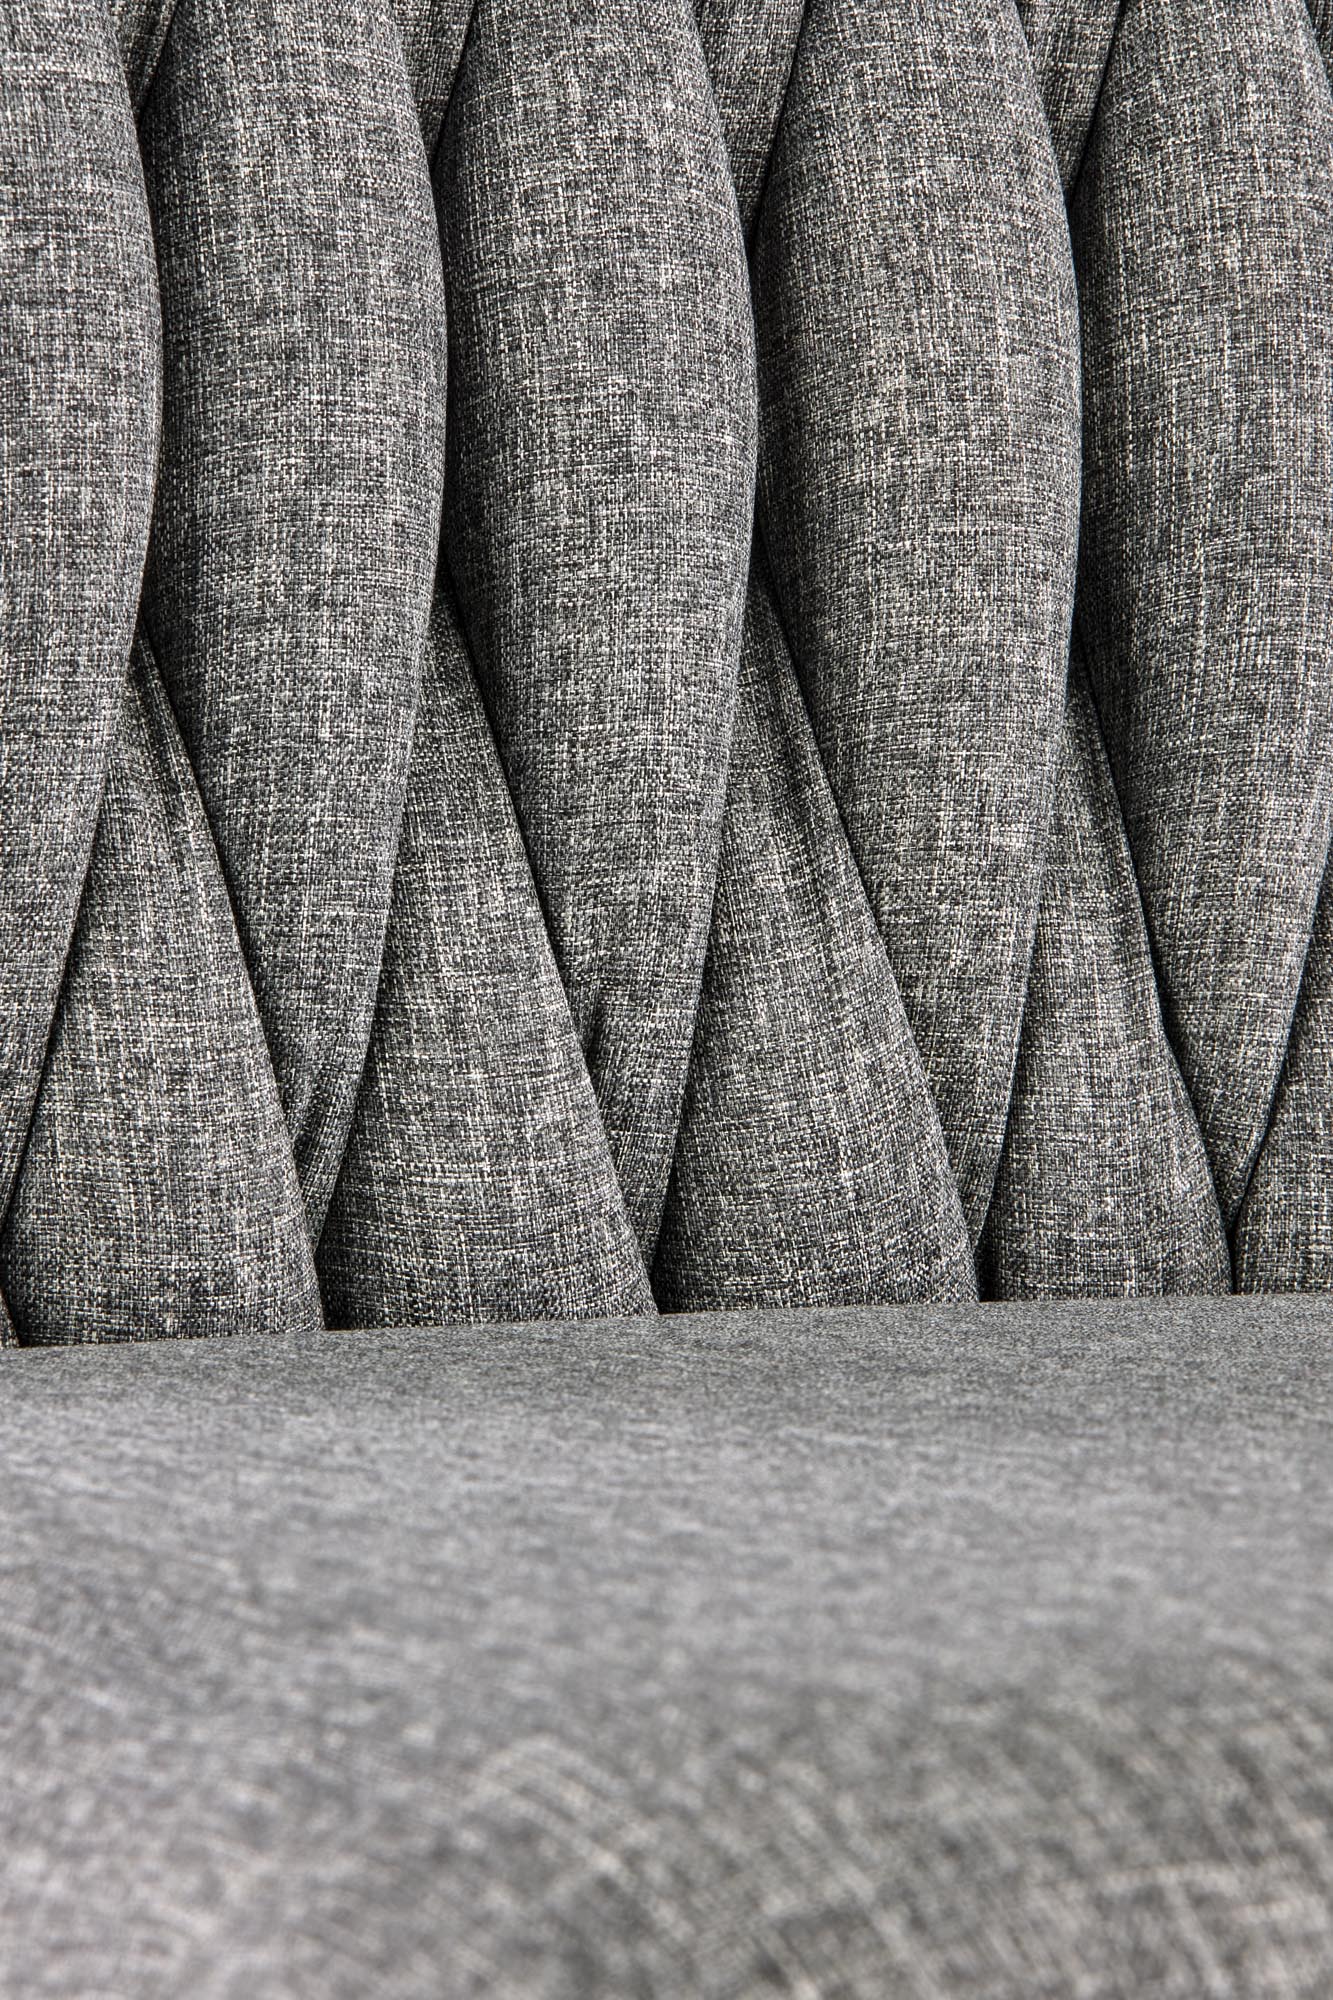 K435 stolica, boja: siva